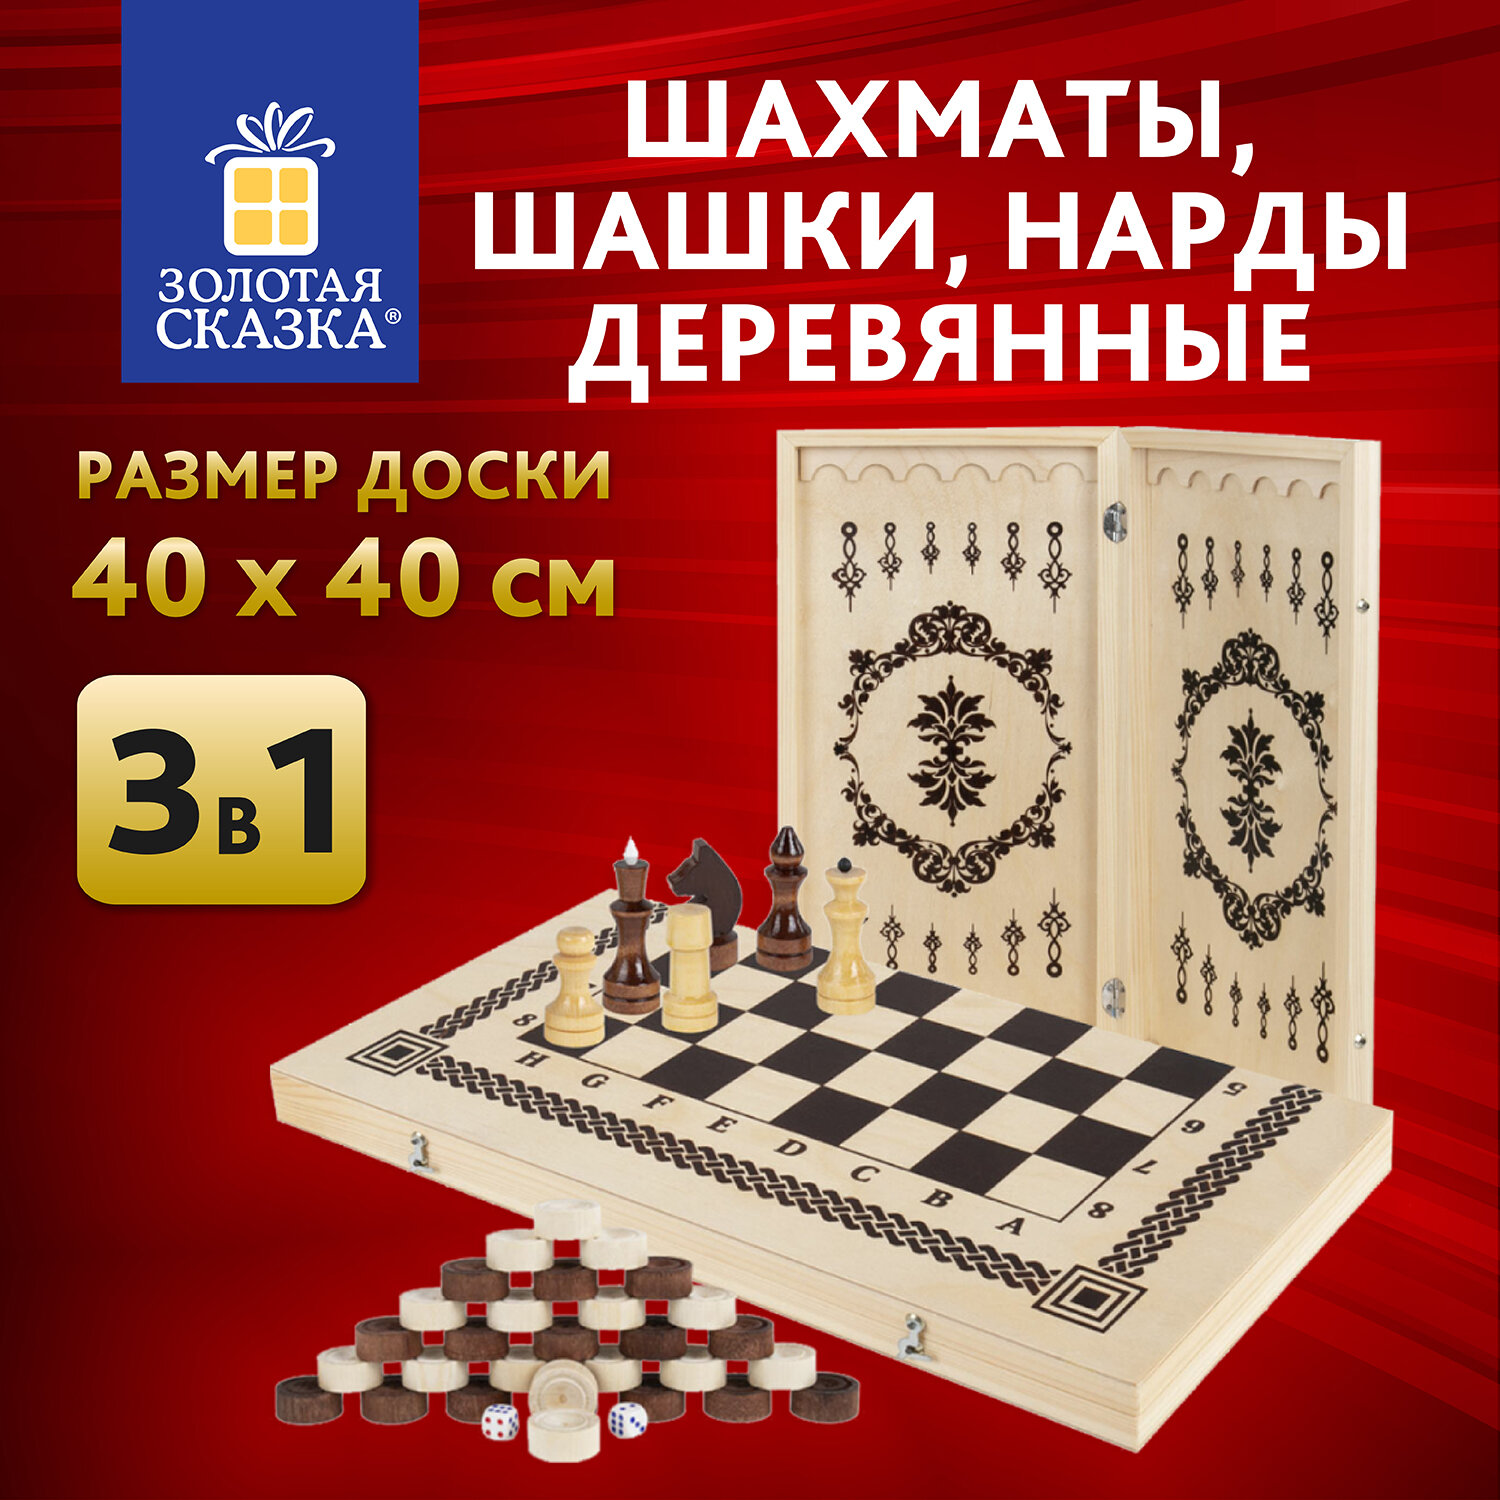 Шахматы Золотая сказка,665364,деревянные, 40х40 см 3в1 шашки, Нарды,подарочный набор набор русские игры шахматы шашки доска из микрогофры